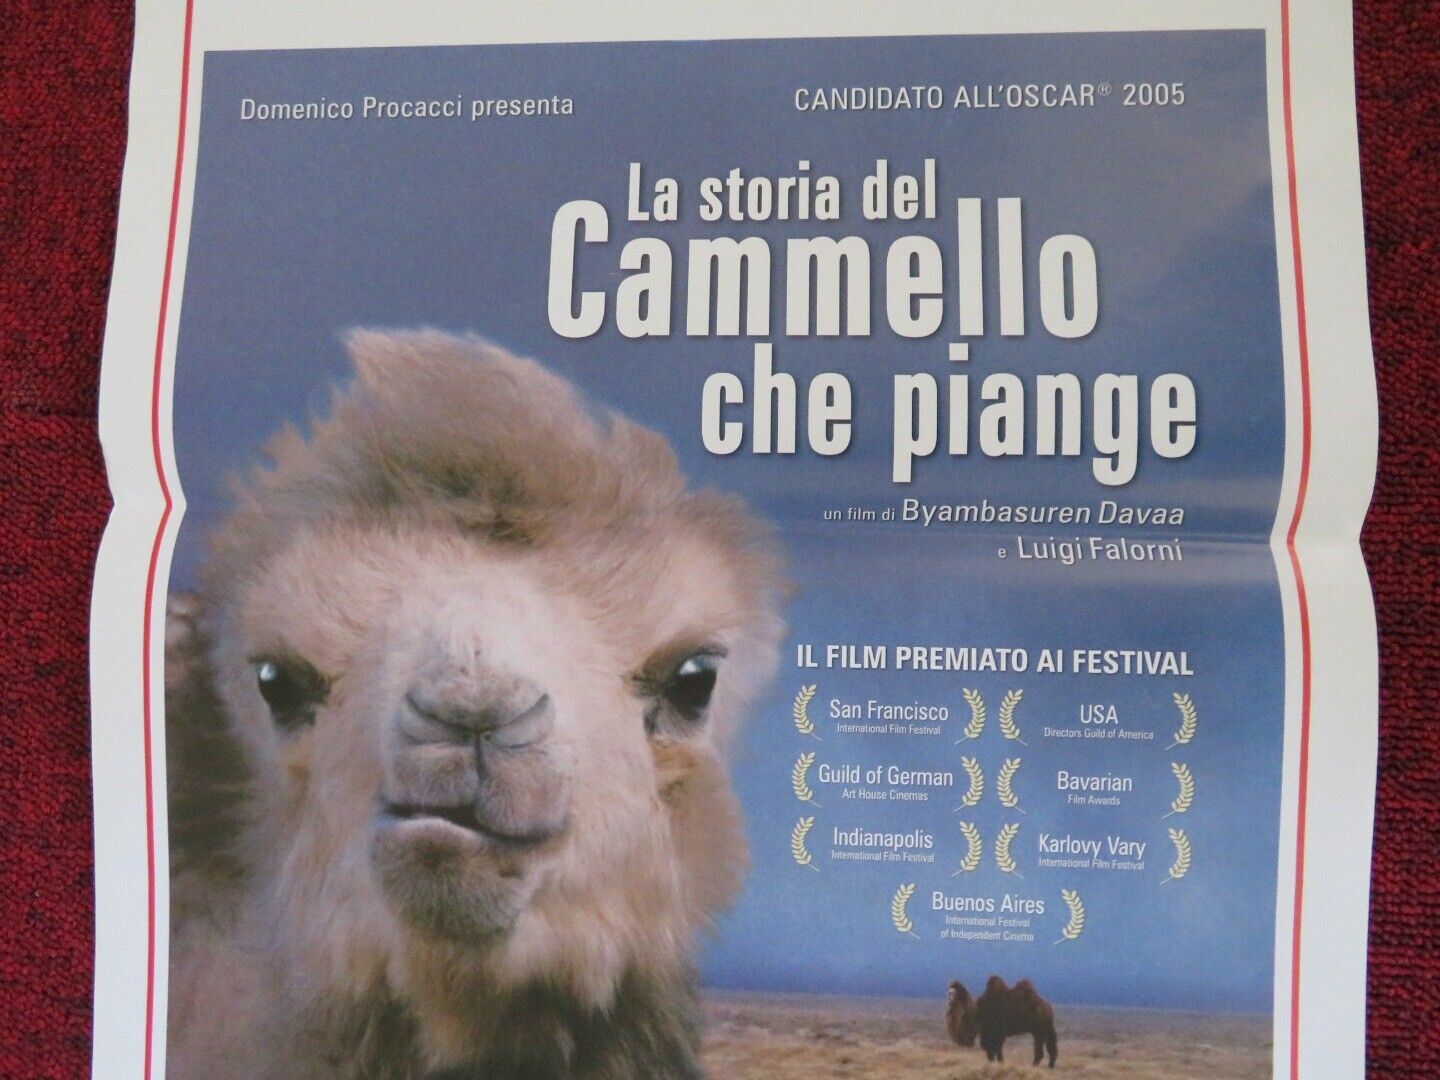 LA STORIA DEL CAMMELLO CHE PIANGE ITALIAN LOCANDINA (27.5"x13") POSTER 2003